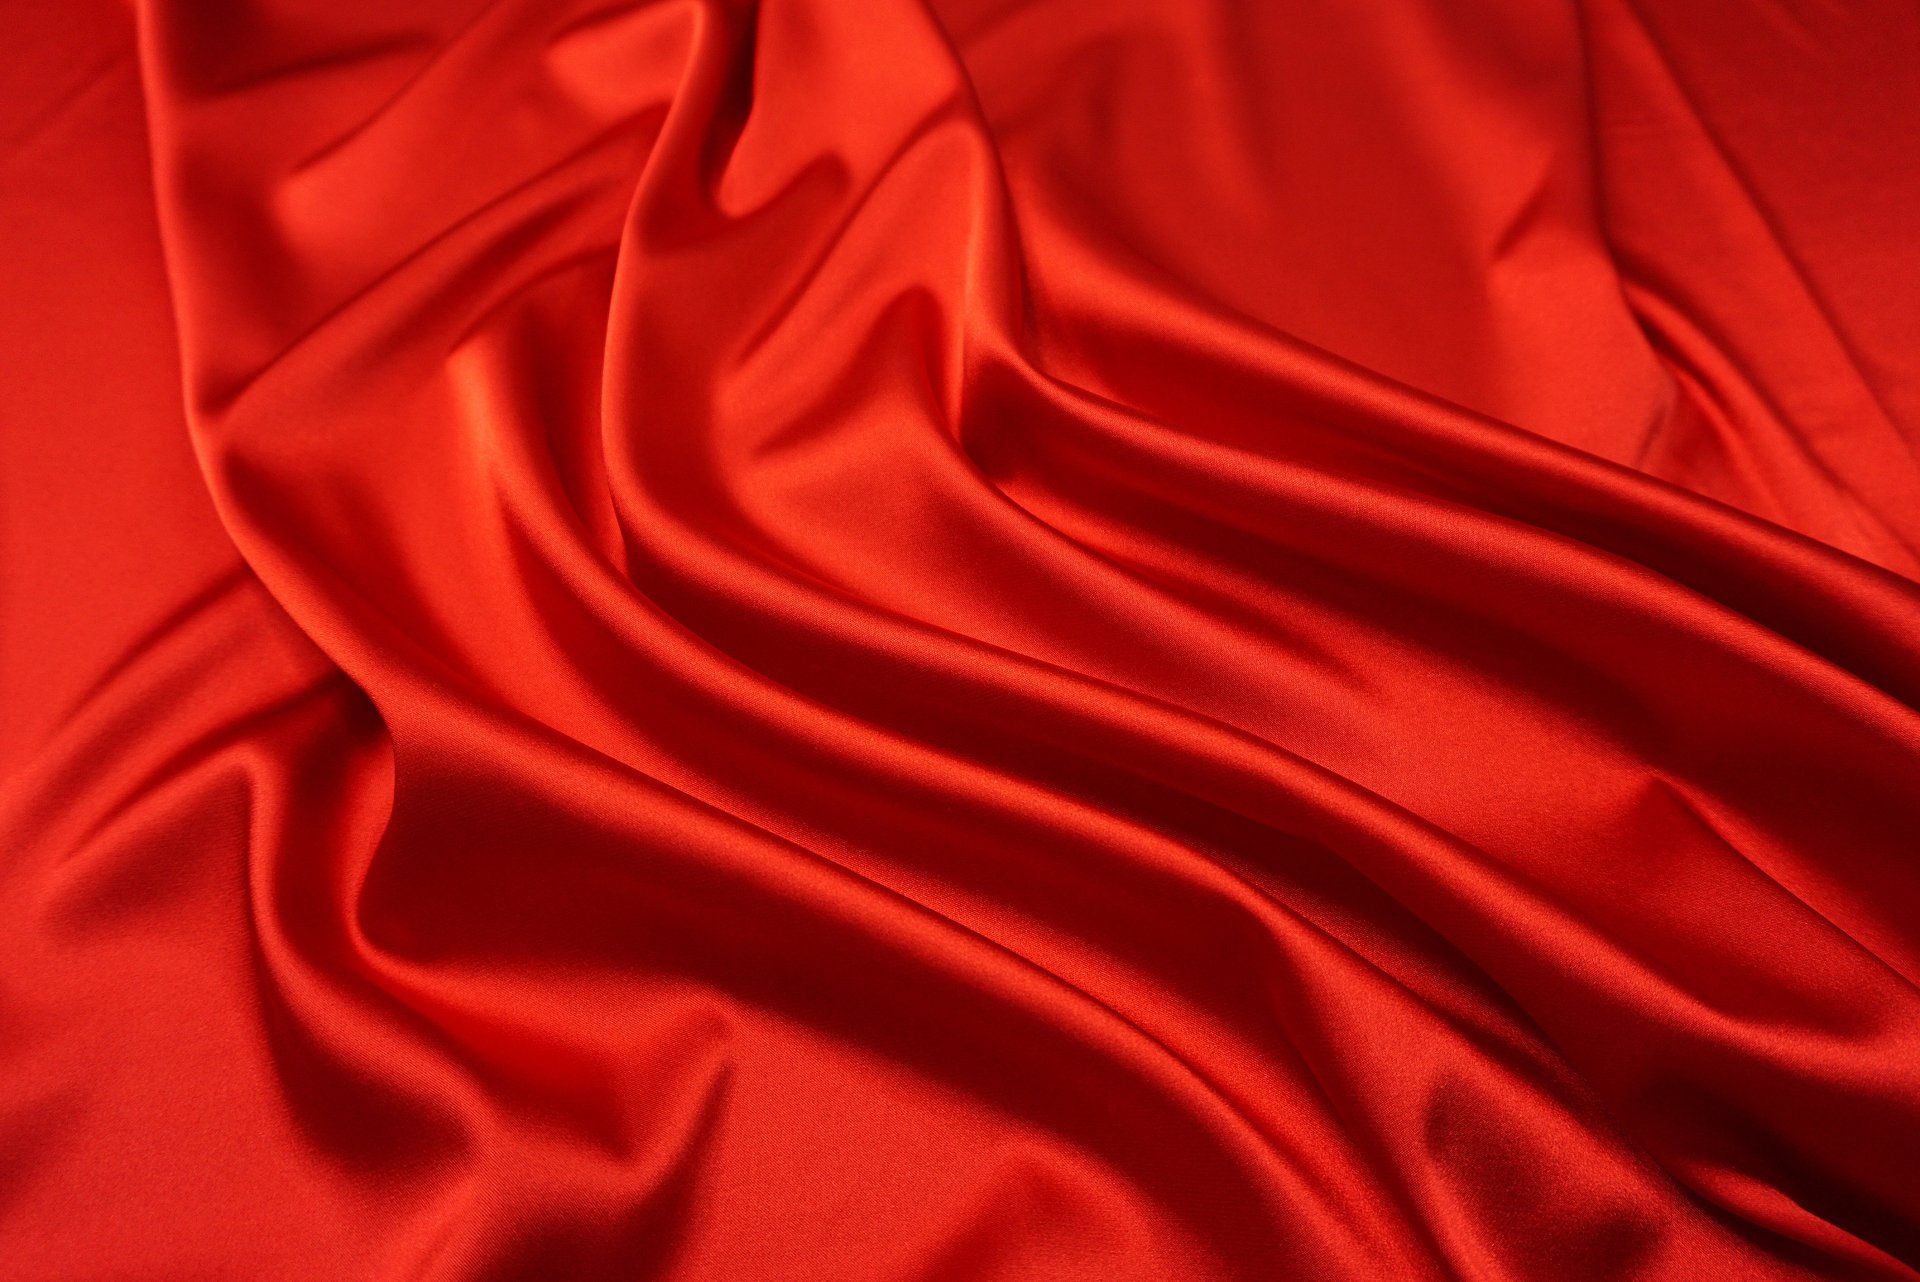 Tissu rouge métallisé très soyeux